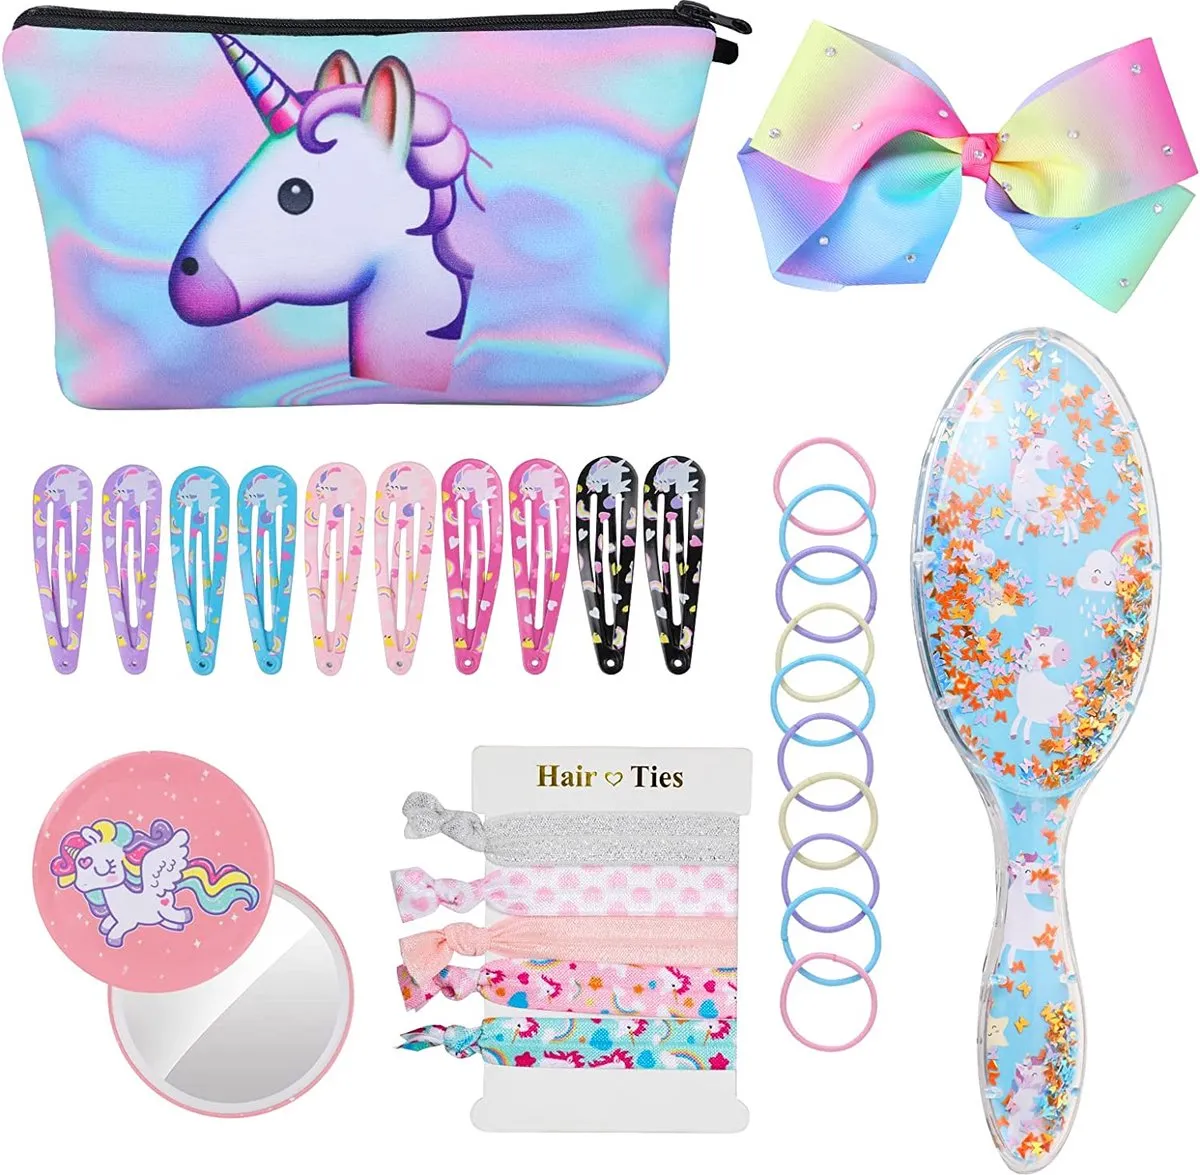 7 Delig - Unicorn Haarverzorging Gift Set - Inclusief Haarborstel / Make Up Tas / Haaraccessoires / Kleurrijke Haarbanden / Regenboog Strik / Spiegel - Geschikt Voor Kinderen en Tieners - Blauw speelgoed